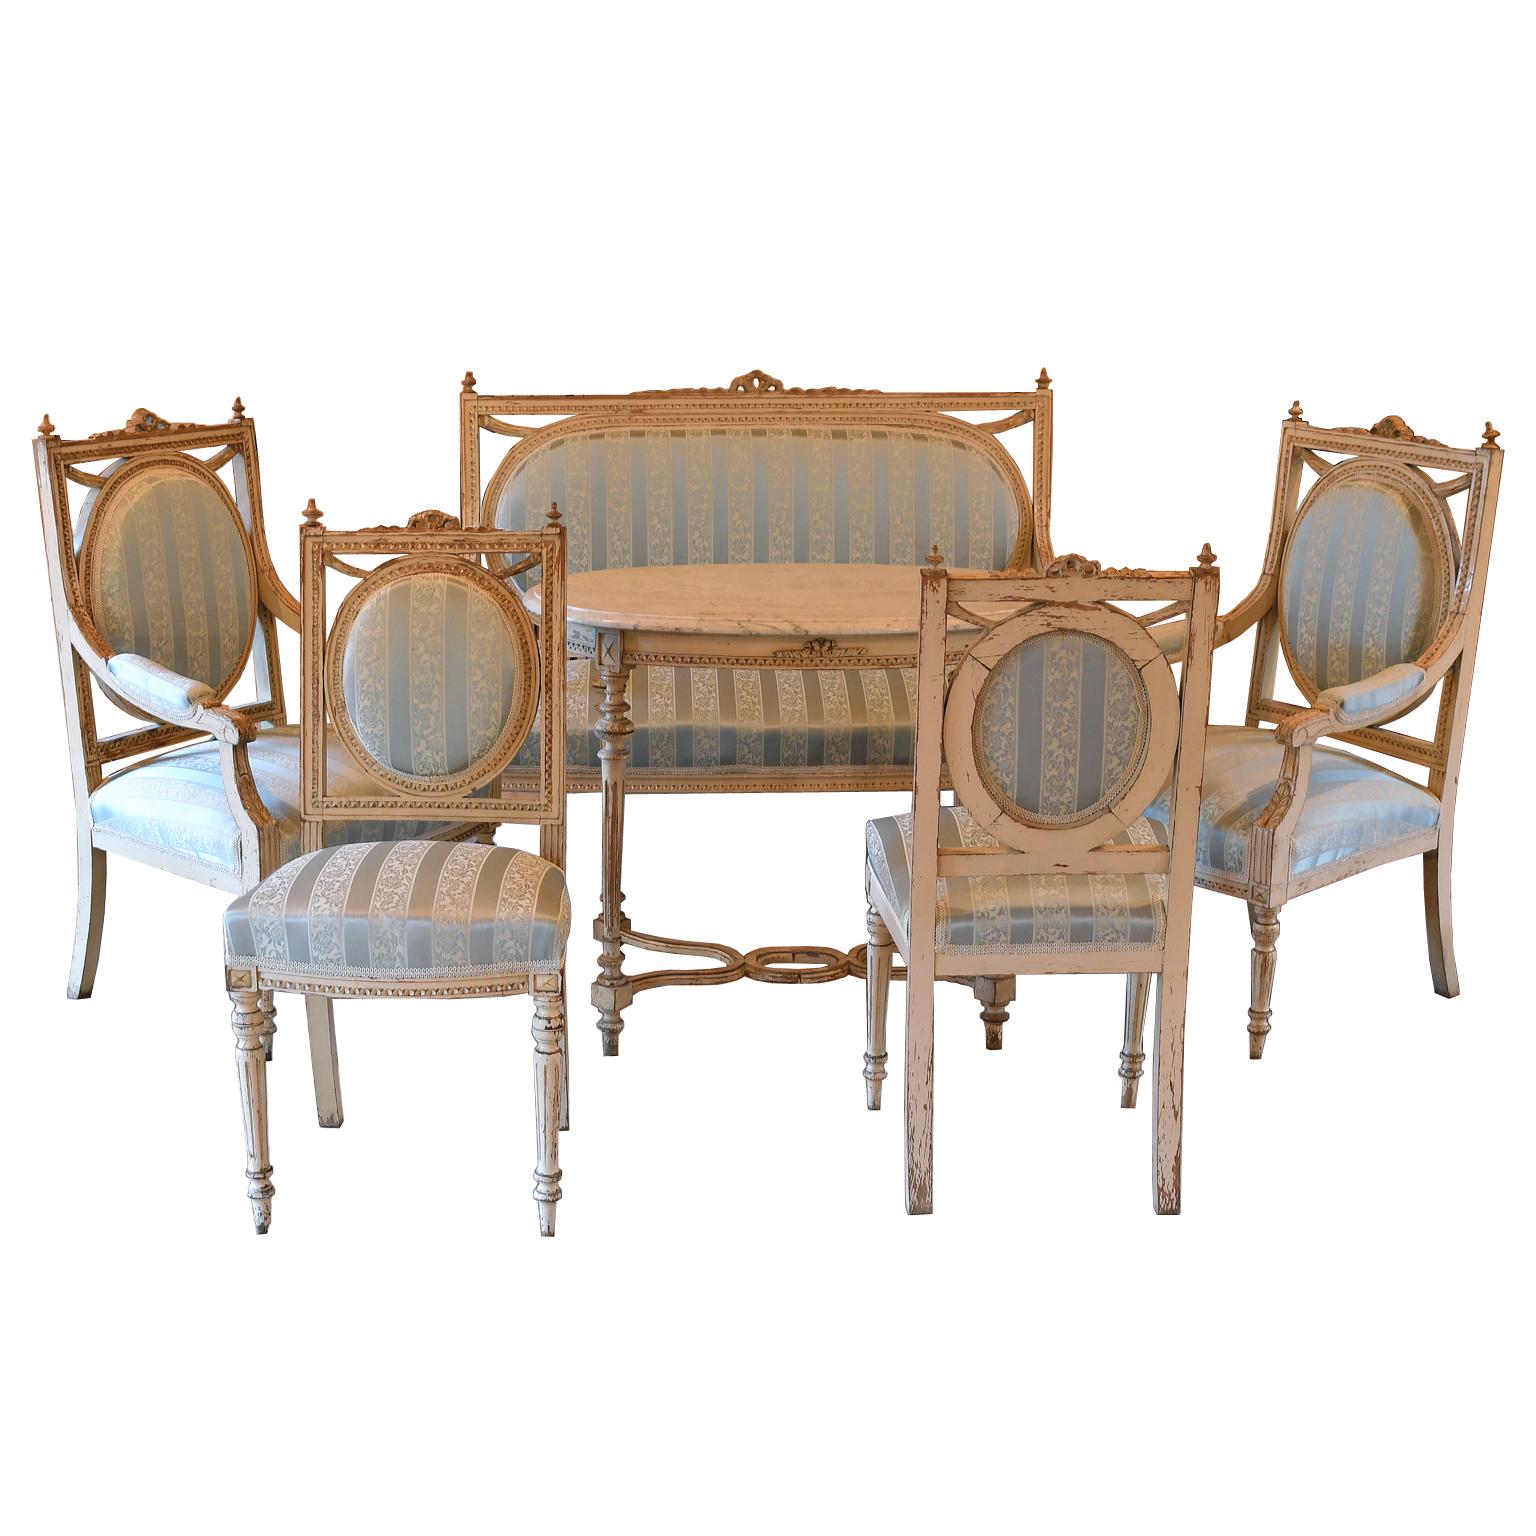 Eine schöne Salon-Suite im Louis XVI-Stil, bestehend aus: (1) Kanapee oder Sofa, (2) Sesseln, (2) Beistellstühlen und einem ovalen Teetisch. Schweden, um 1915. Die geschnitzten Holzrahmen haben die ursprüngliche weiß/graue gustavianische Farbe mit